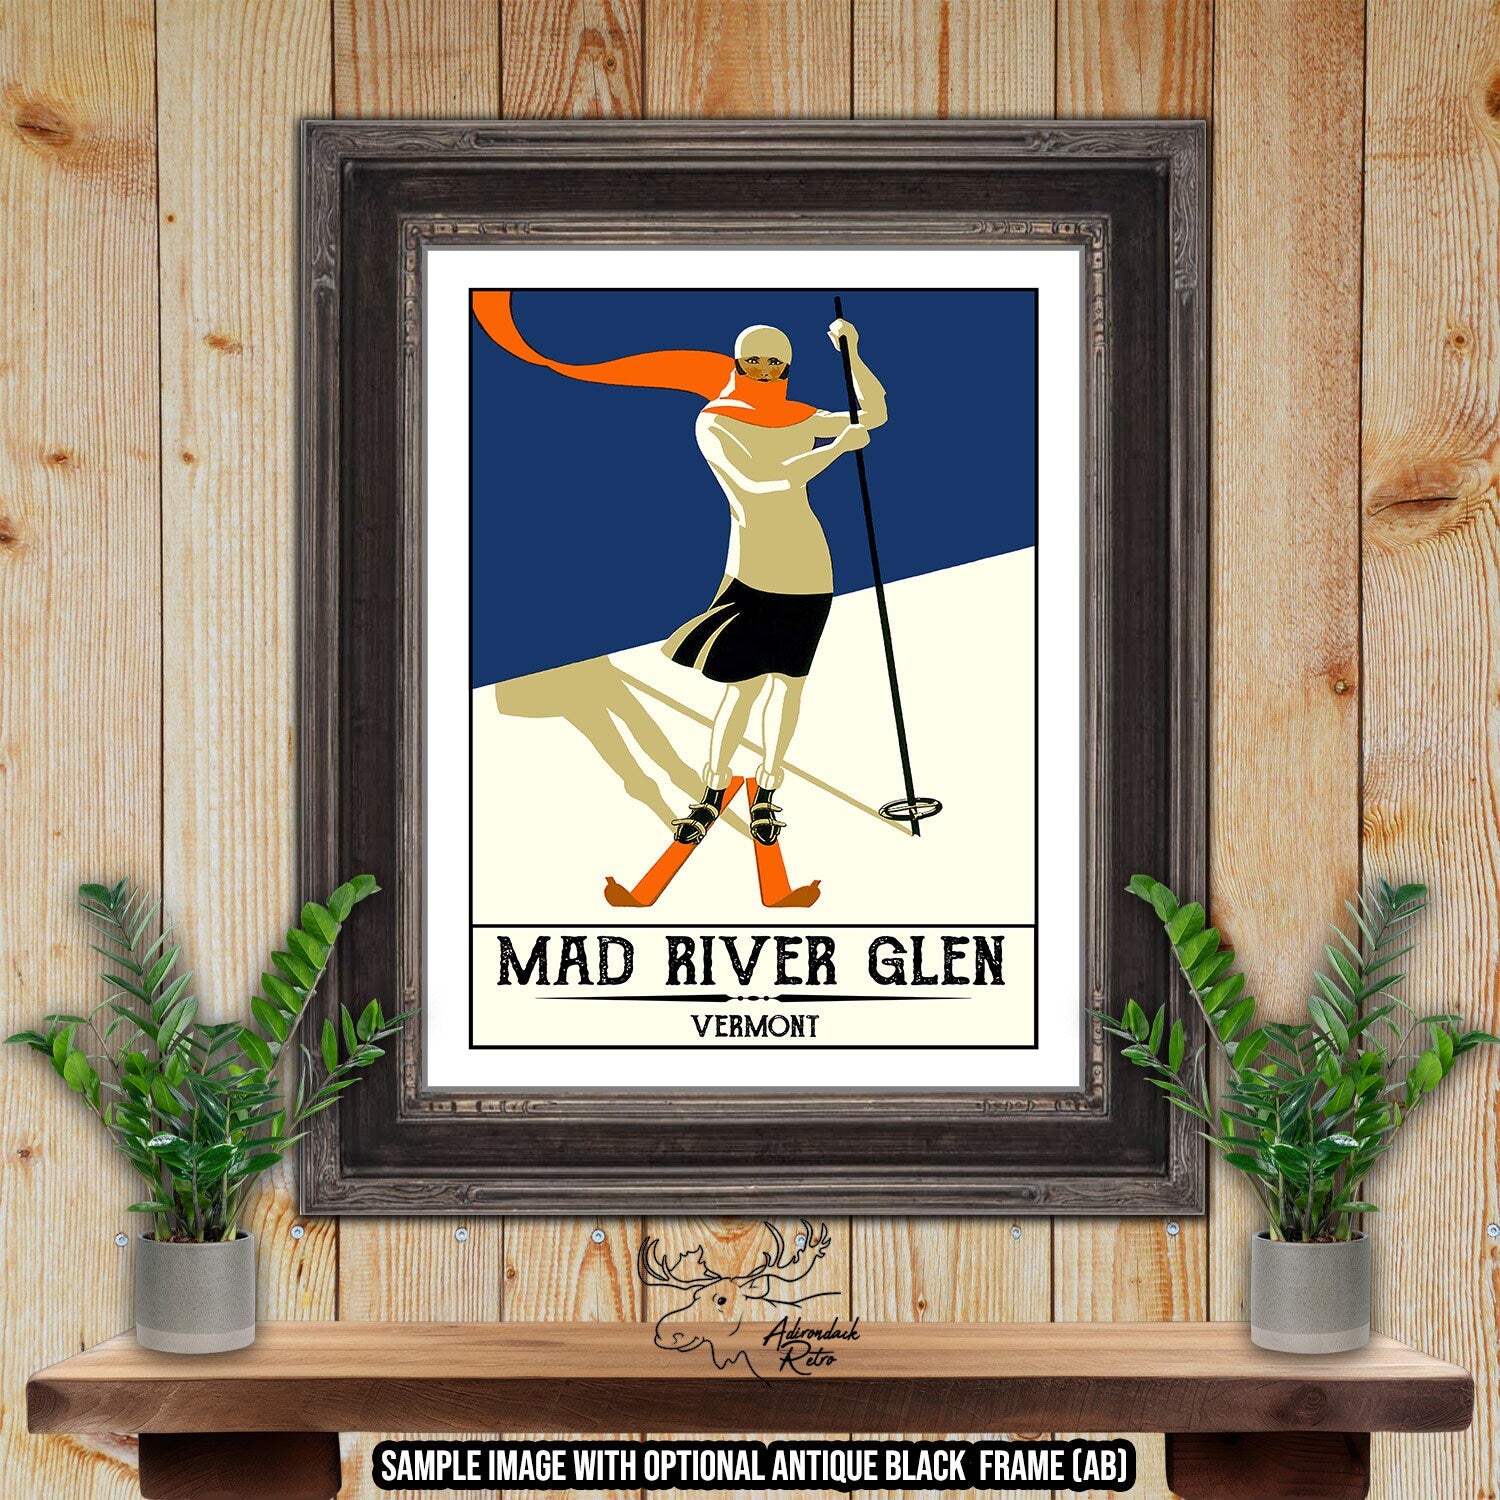 Mad River Glen Vermont Retro Ski Resort Print at Adirondack Retro